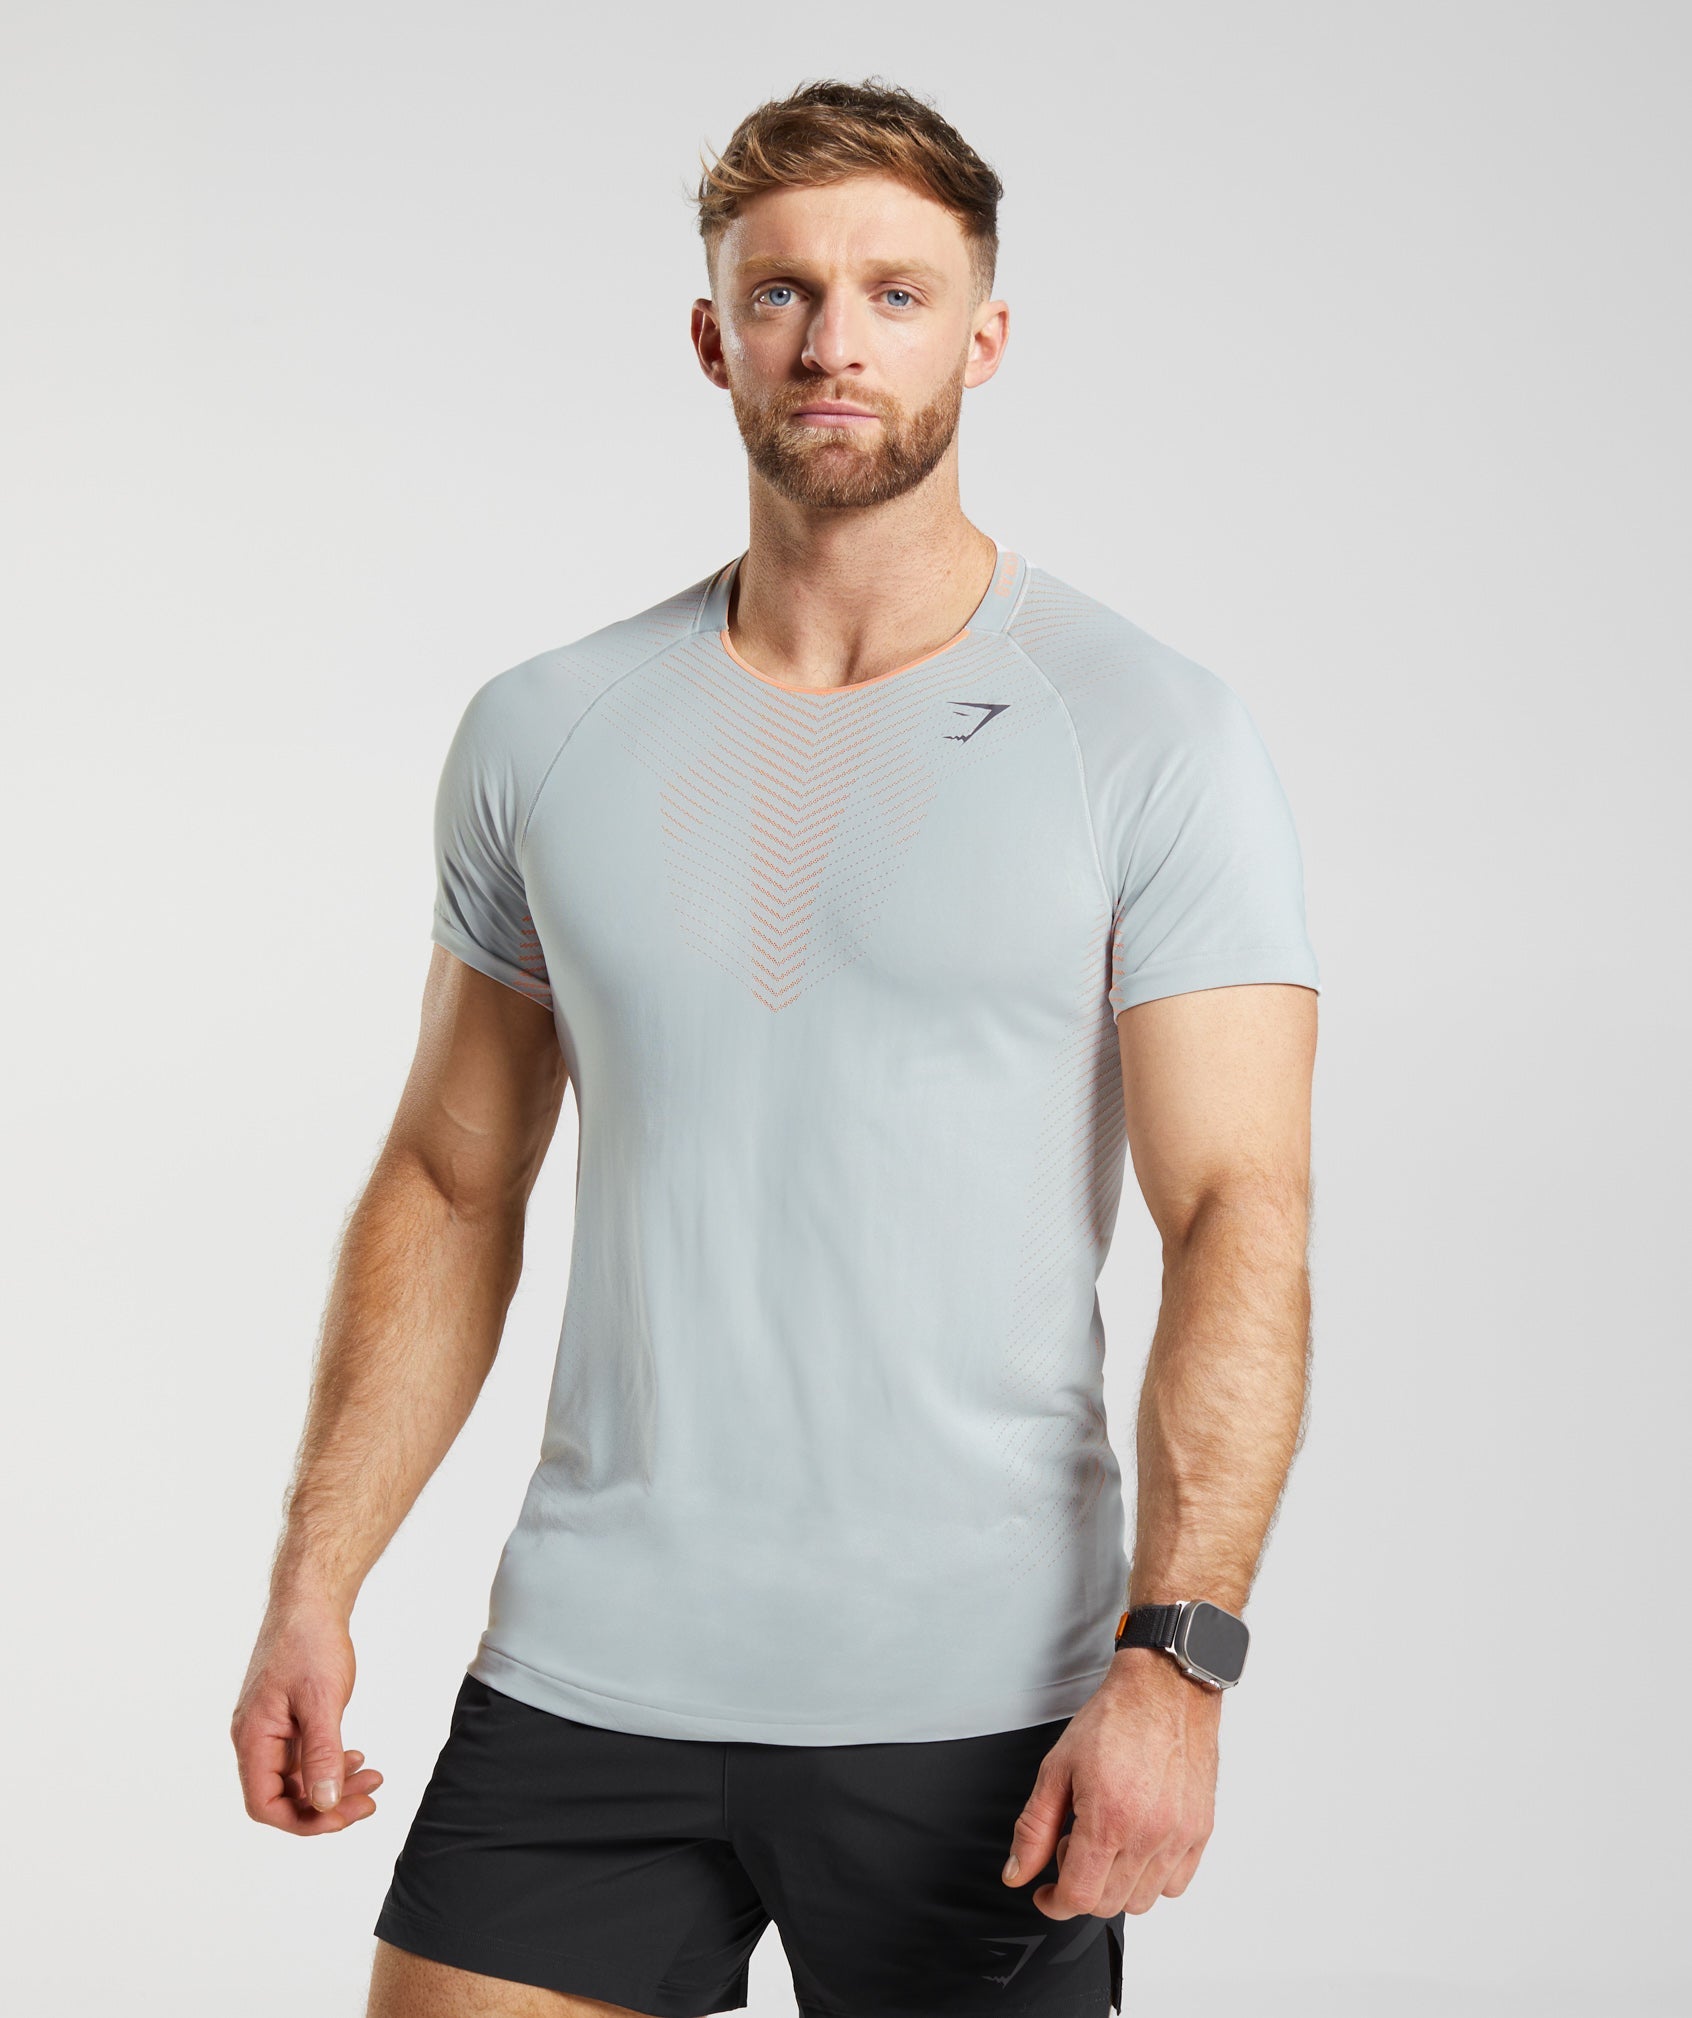 Gymshark Apex Seamless T-Shirt - Light Grey/Fluo Peach